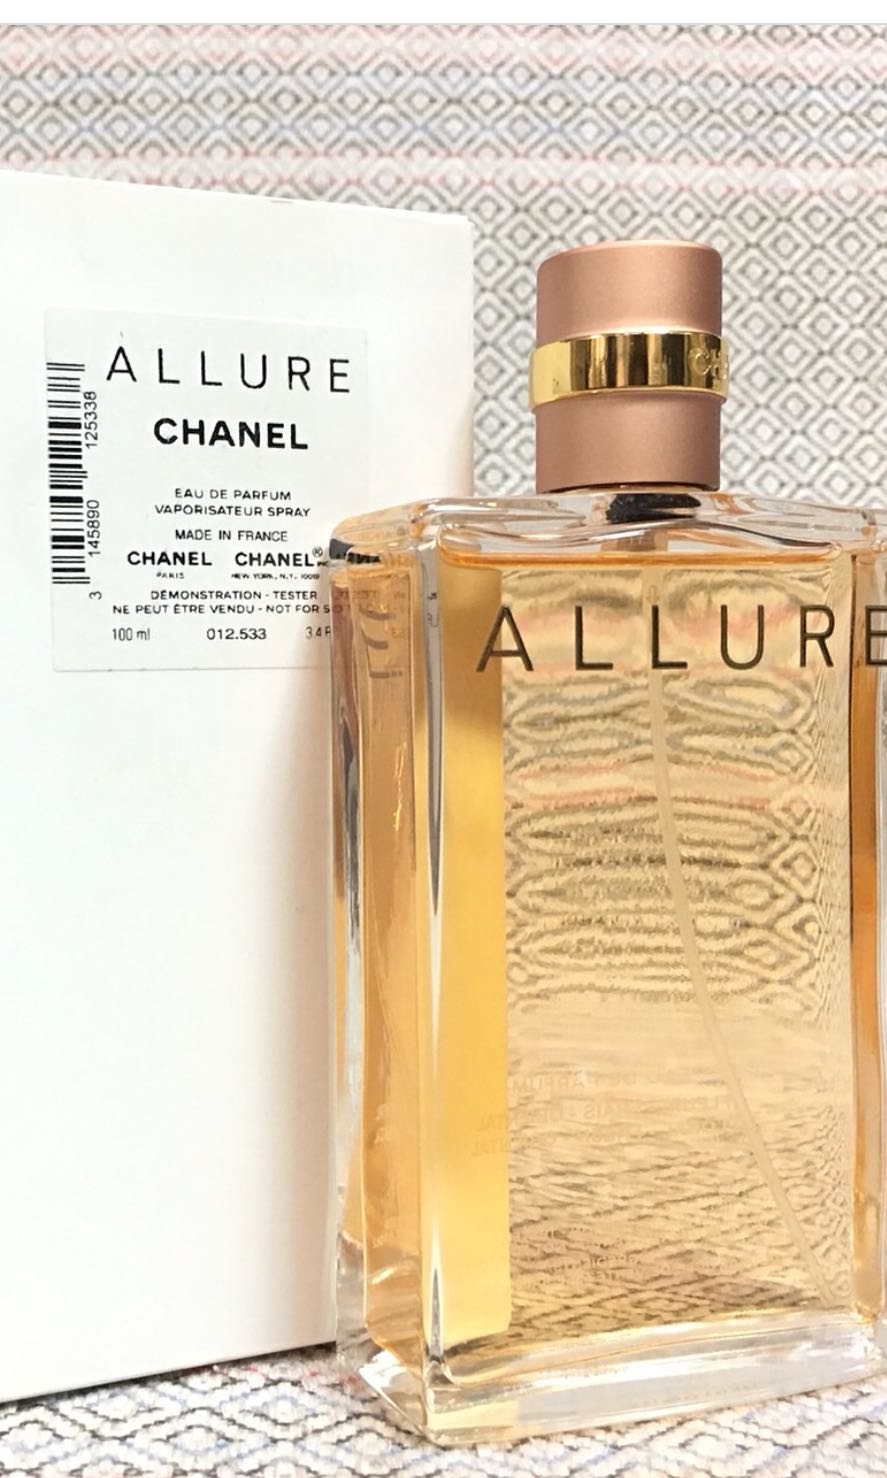 Chanel Allure Sensuelle - Eau de Parfum (tester without cap)